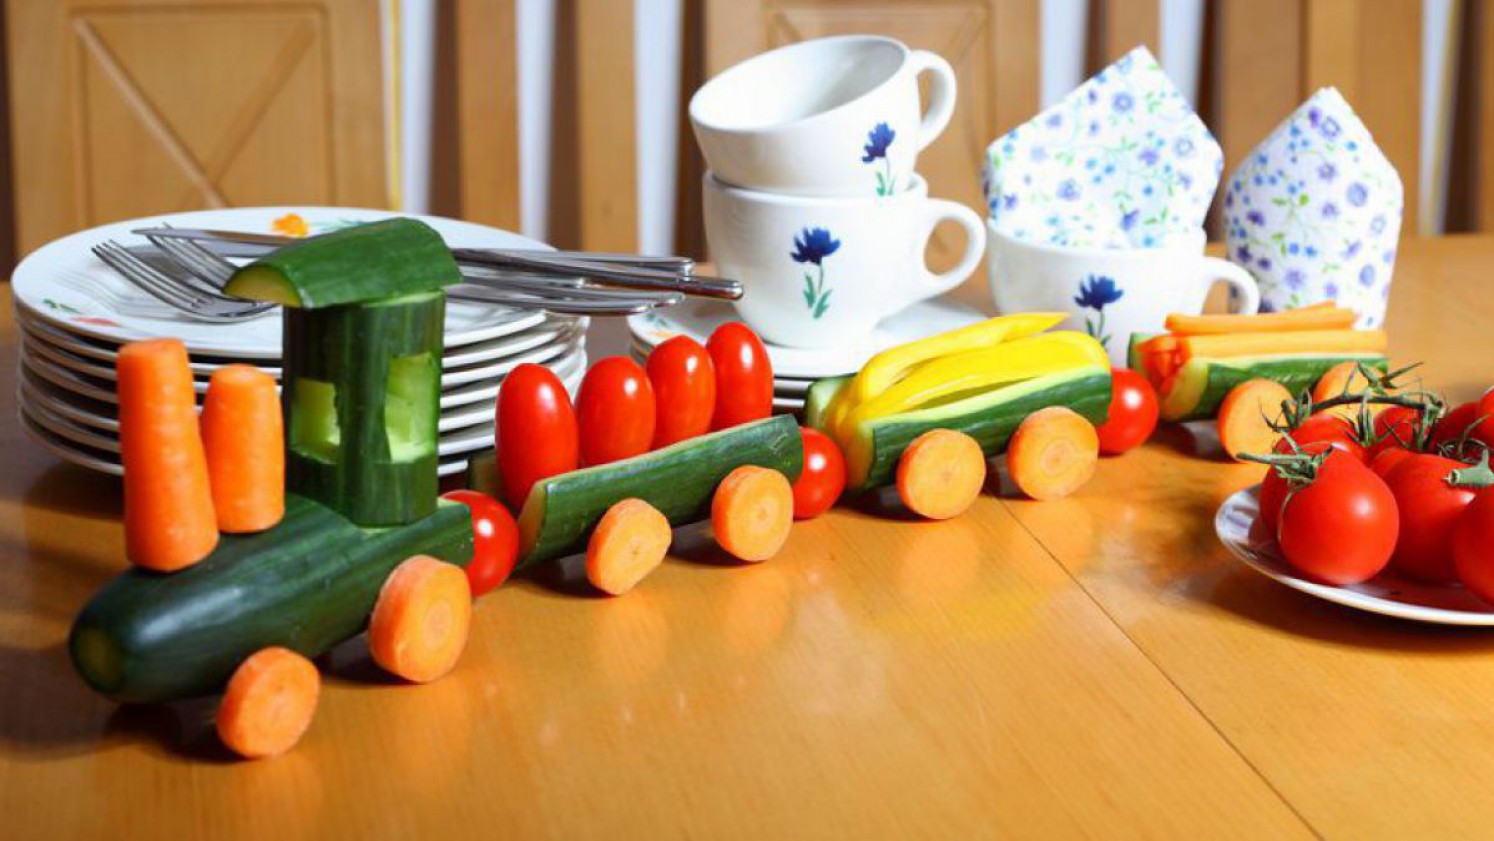 Gemüsezug aus Gurken, Tomaten und Obst gestaltet.